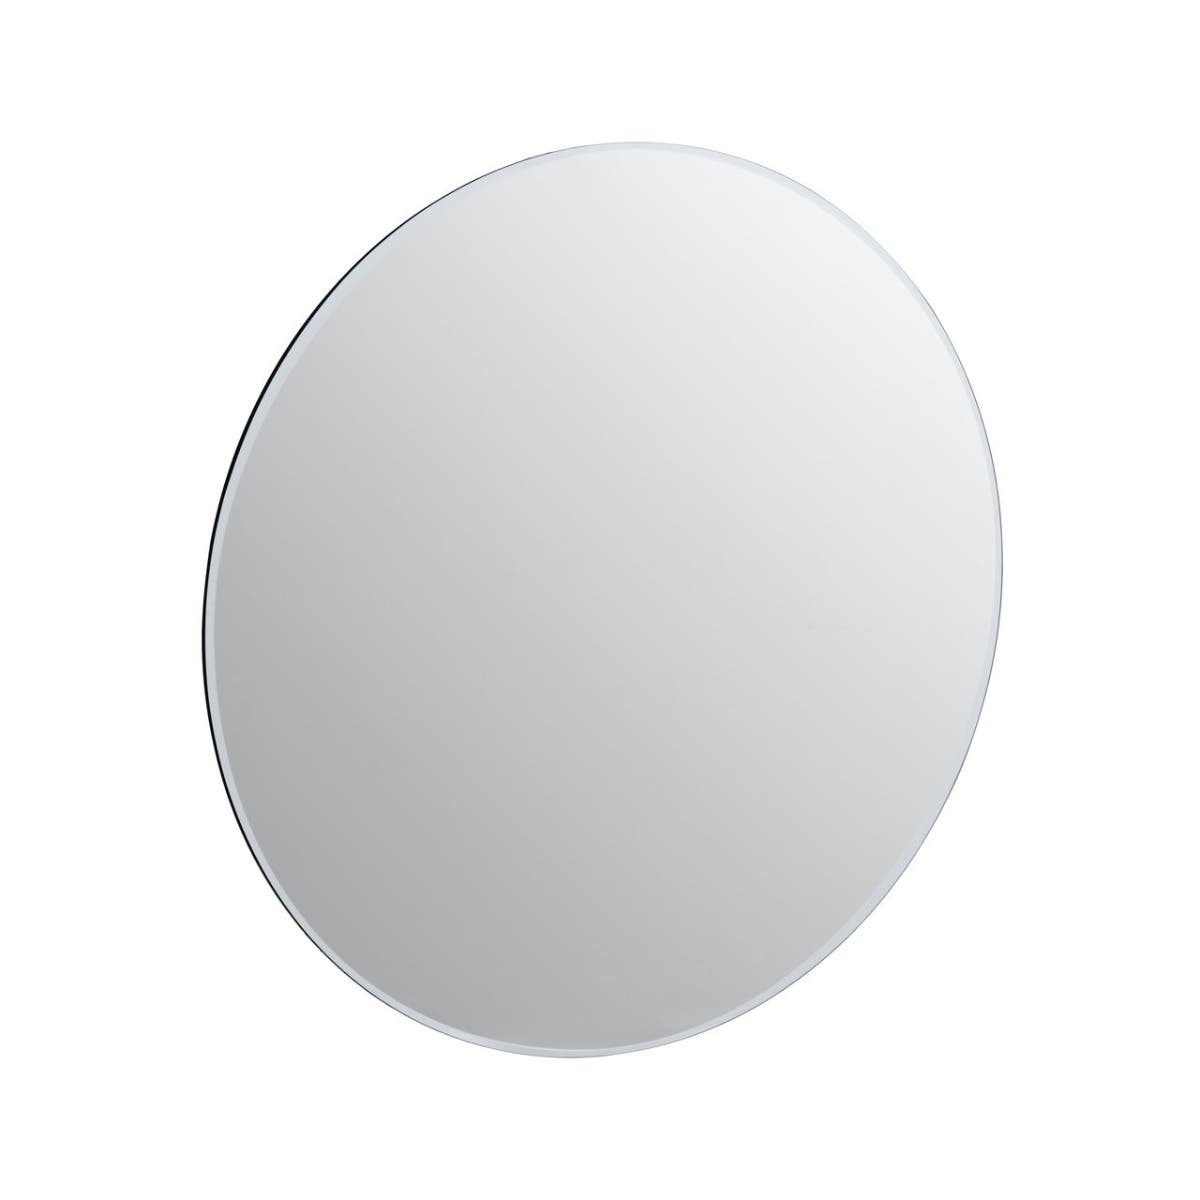 Sana Small Round Wall Mirror